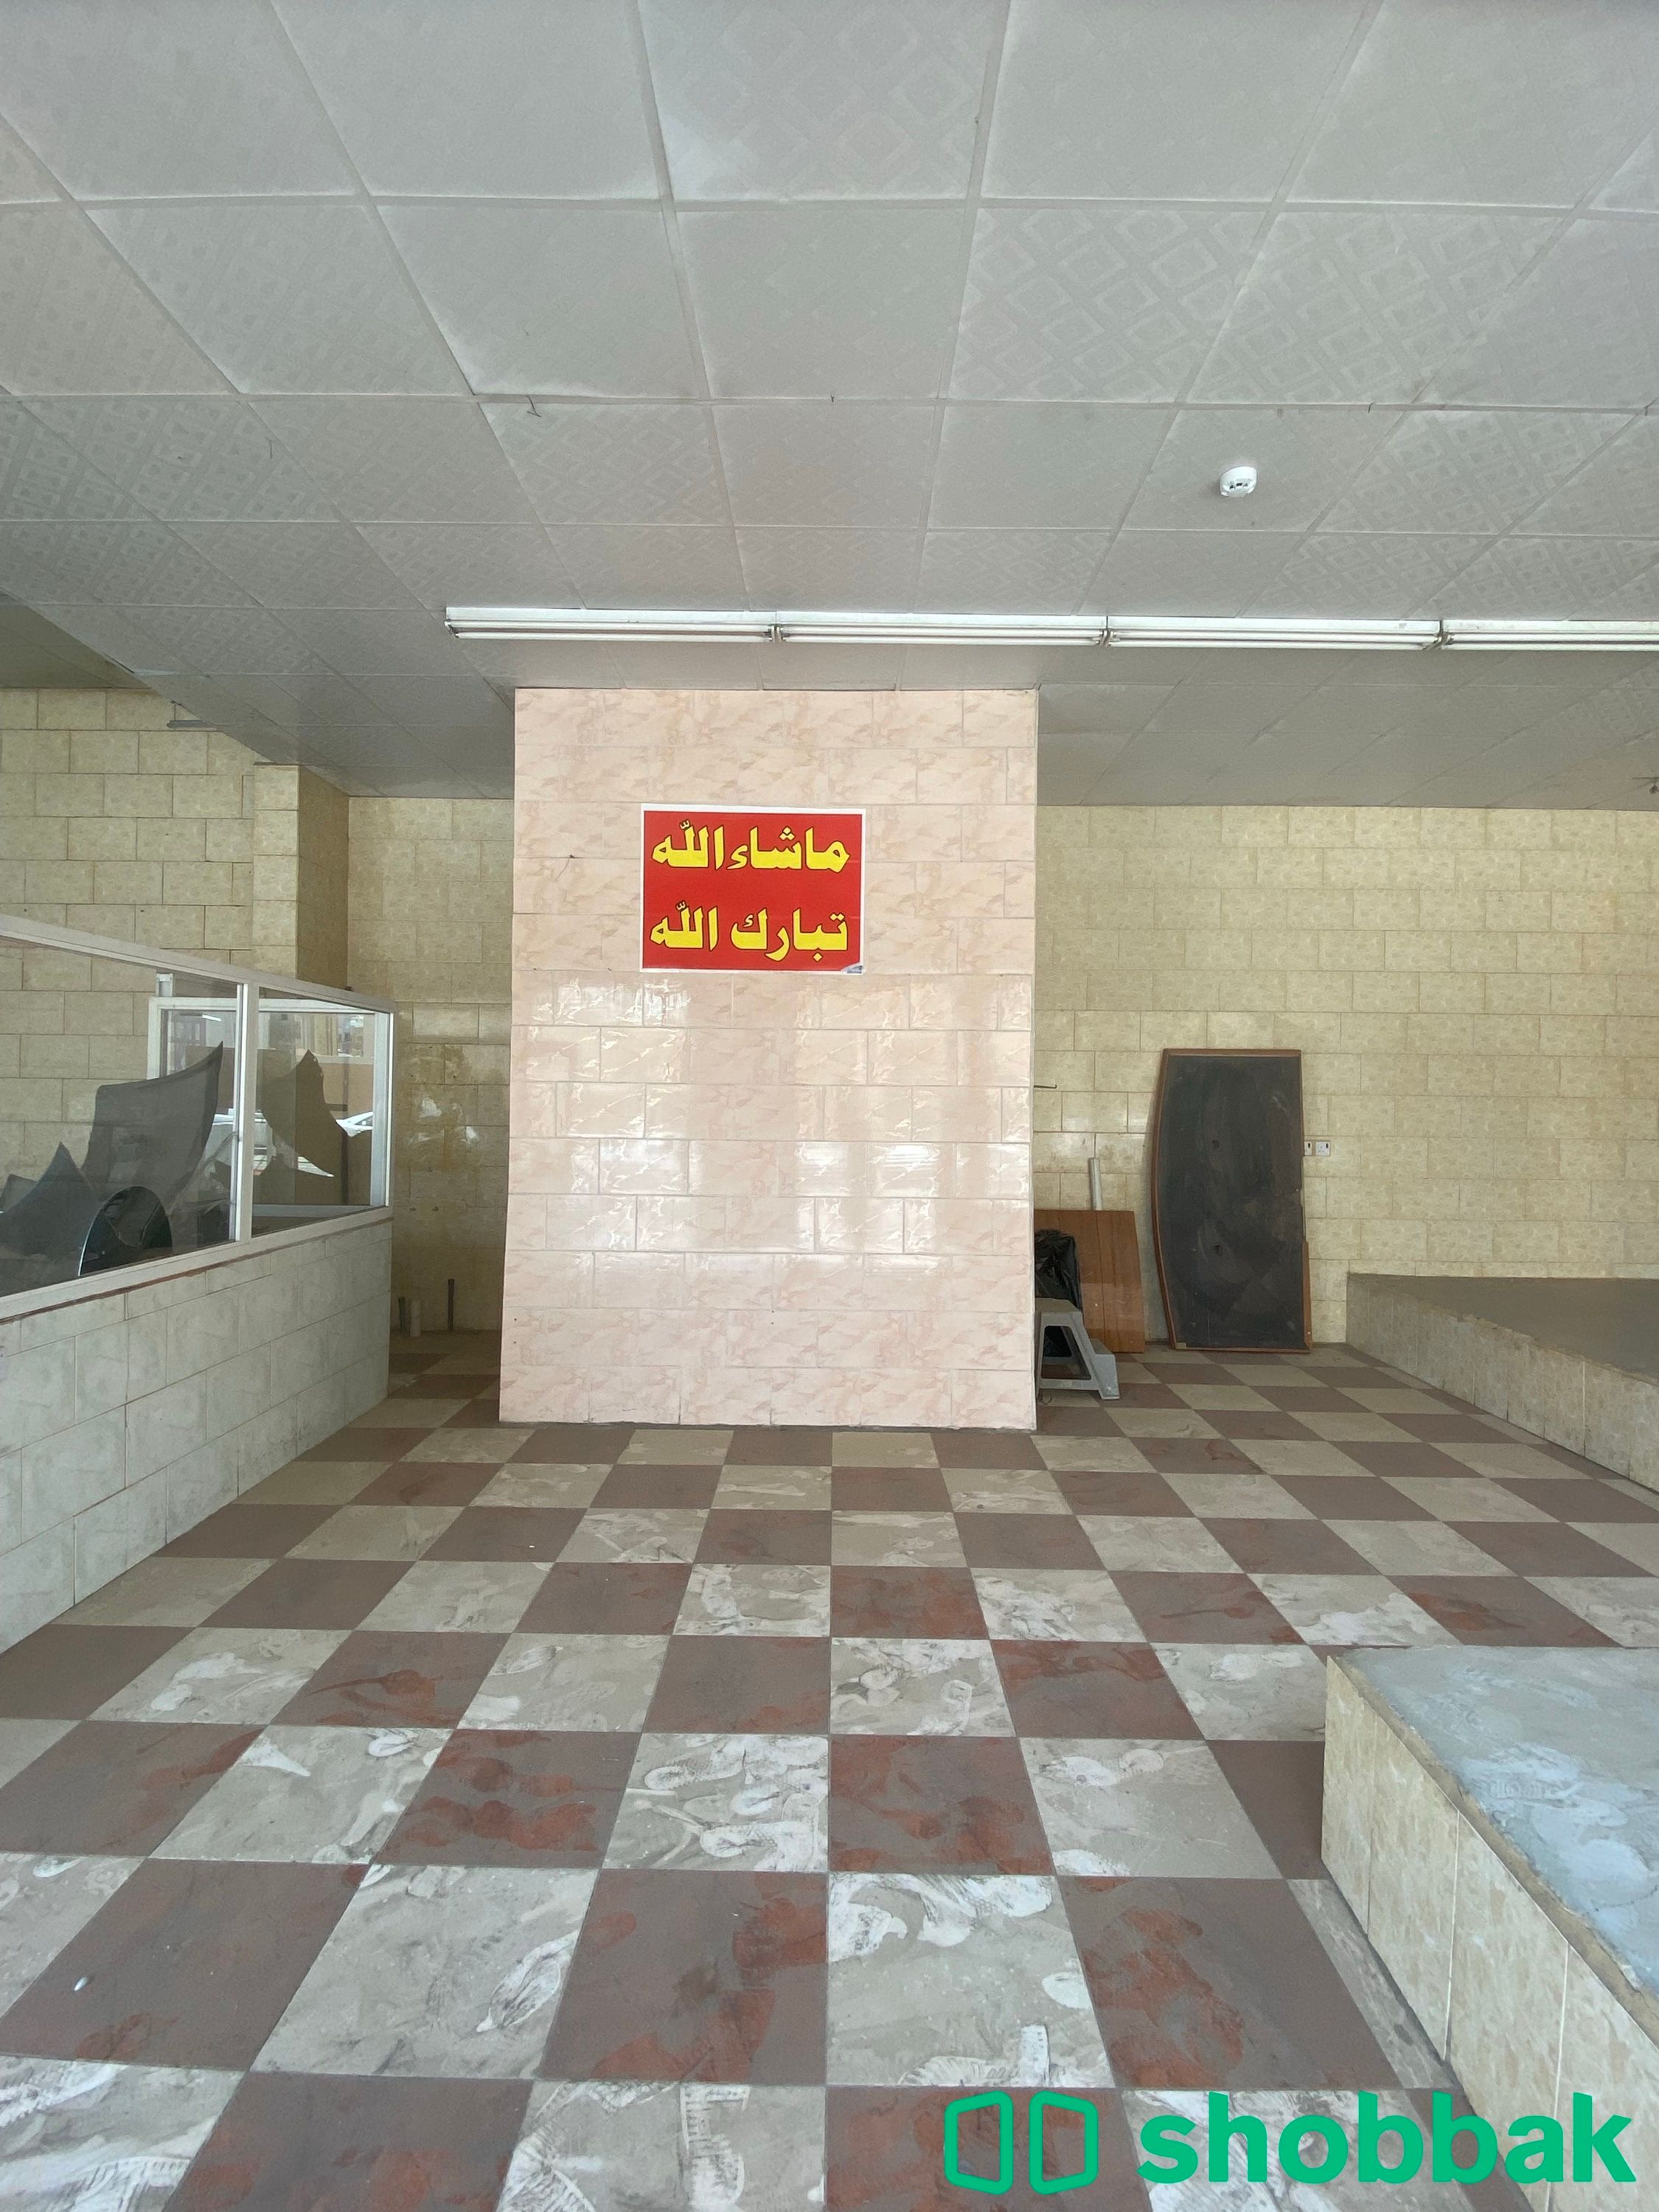 محل للإيجار  حي الصفا Shobbak Saudi Arabia